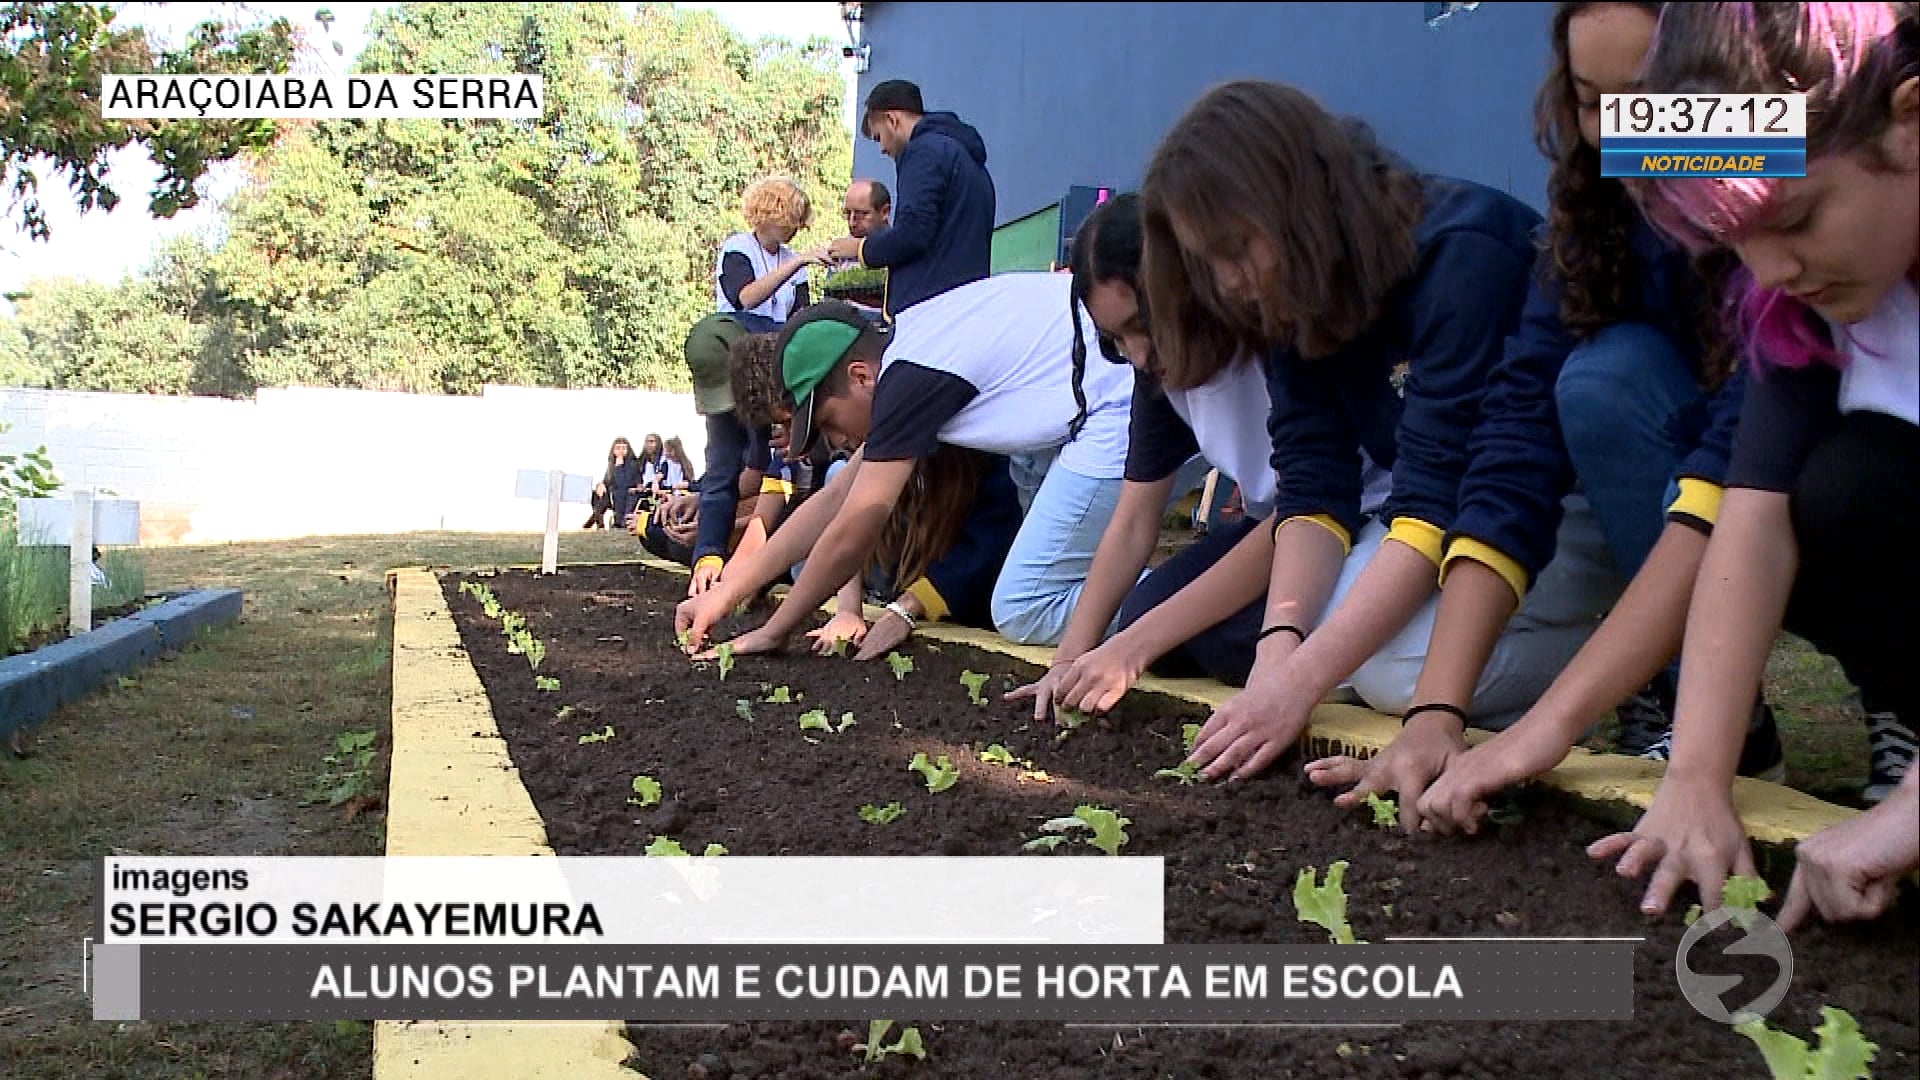 Alunos plantam e cuidam de horta em escola de Araçoiaba da Serra